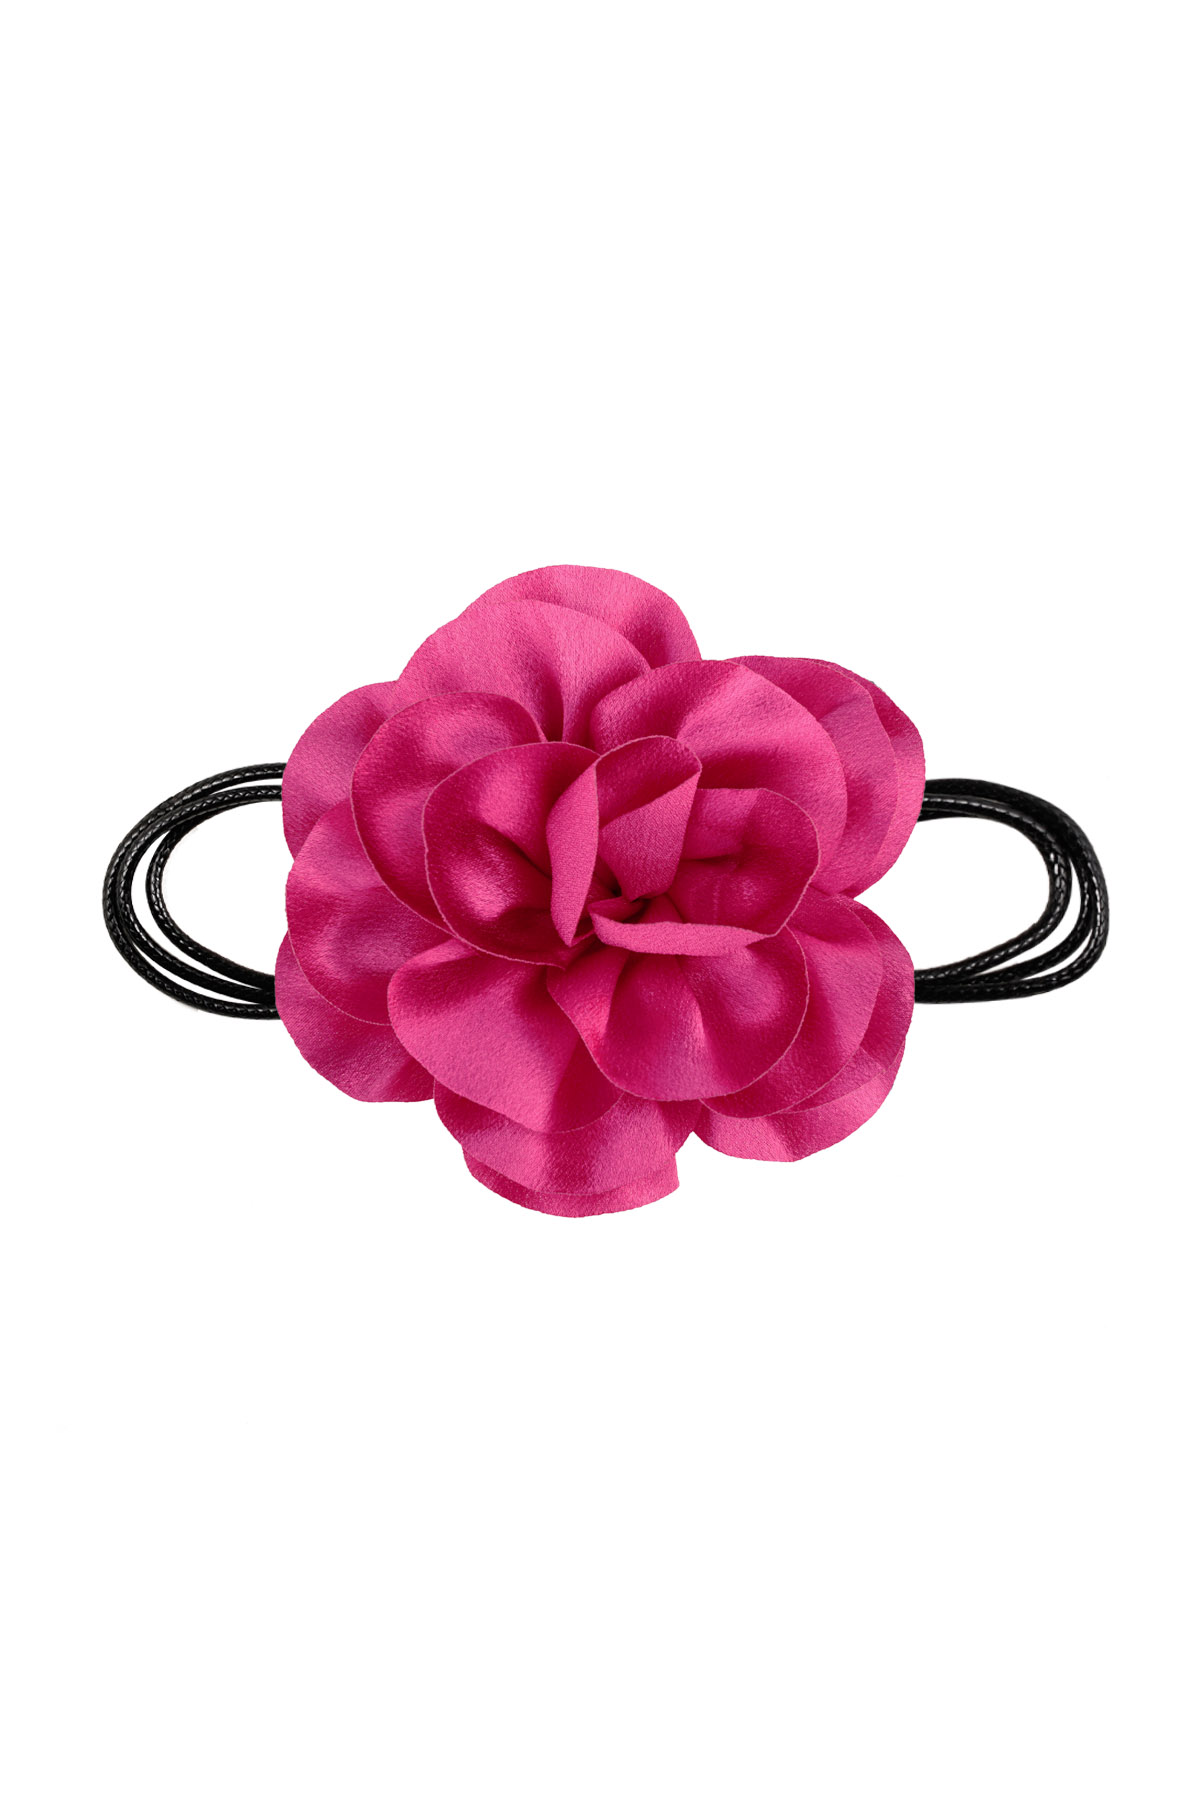 Collier corde fleur brillante - rose vif